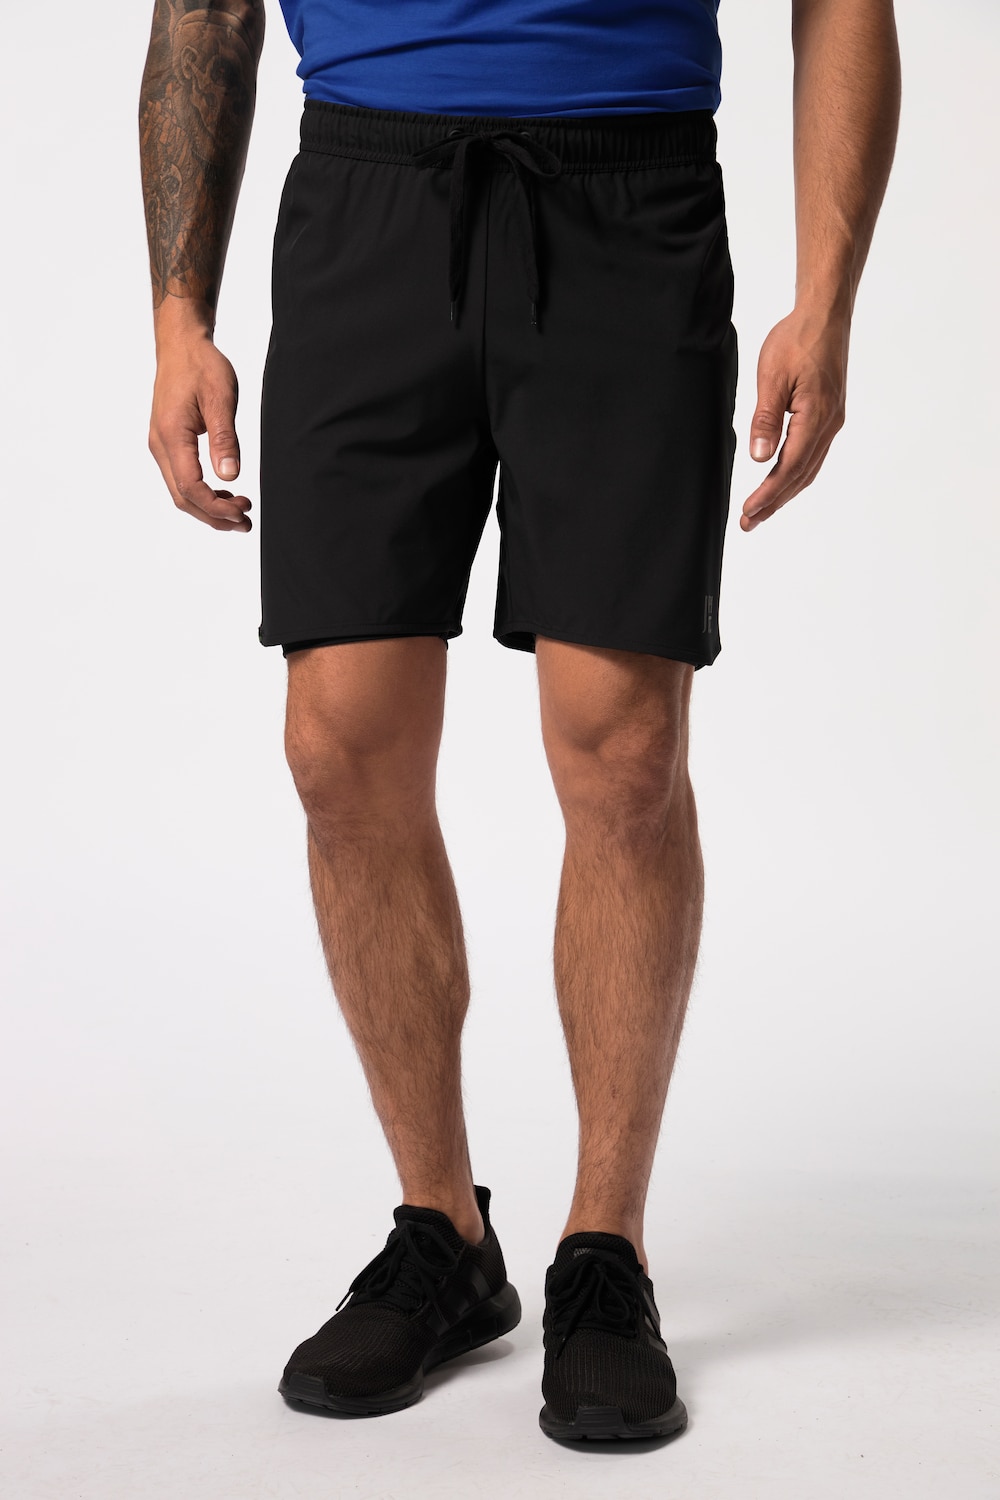 grandes tailles pantalon de sport jay-pi flexnamic®, femmes, noir, taille: l, polyester/fibres synthétiques/élasthanne, jay-pi